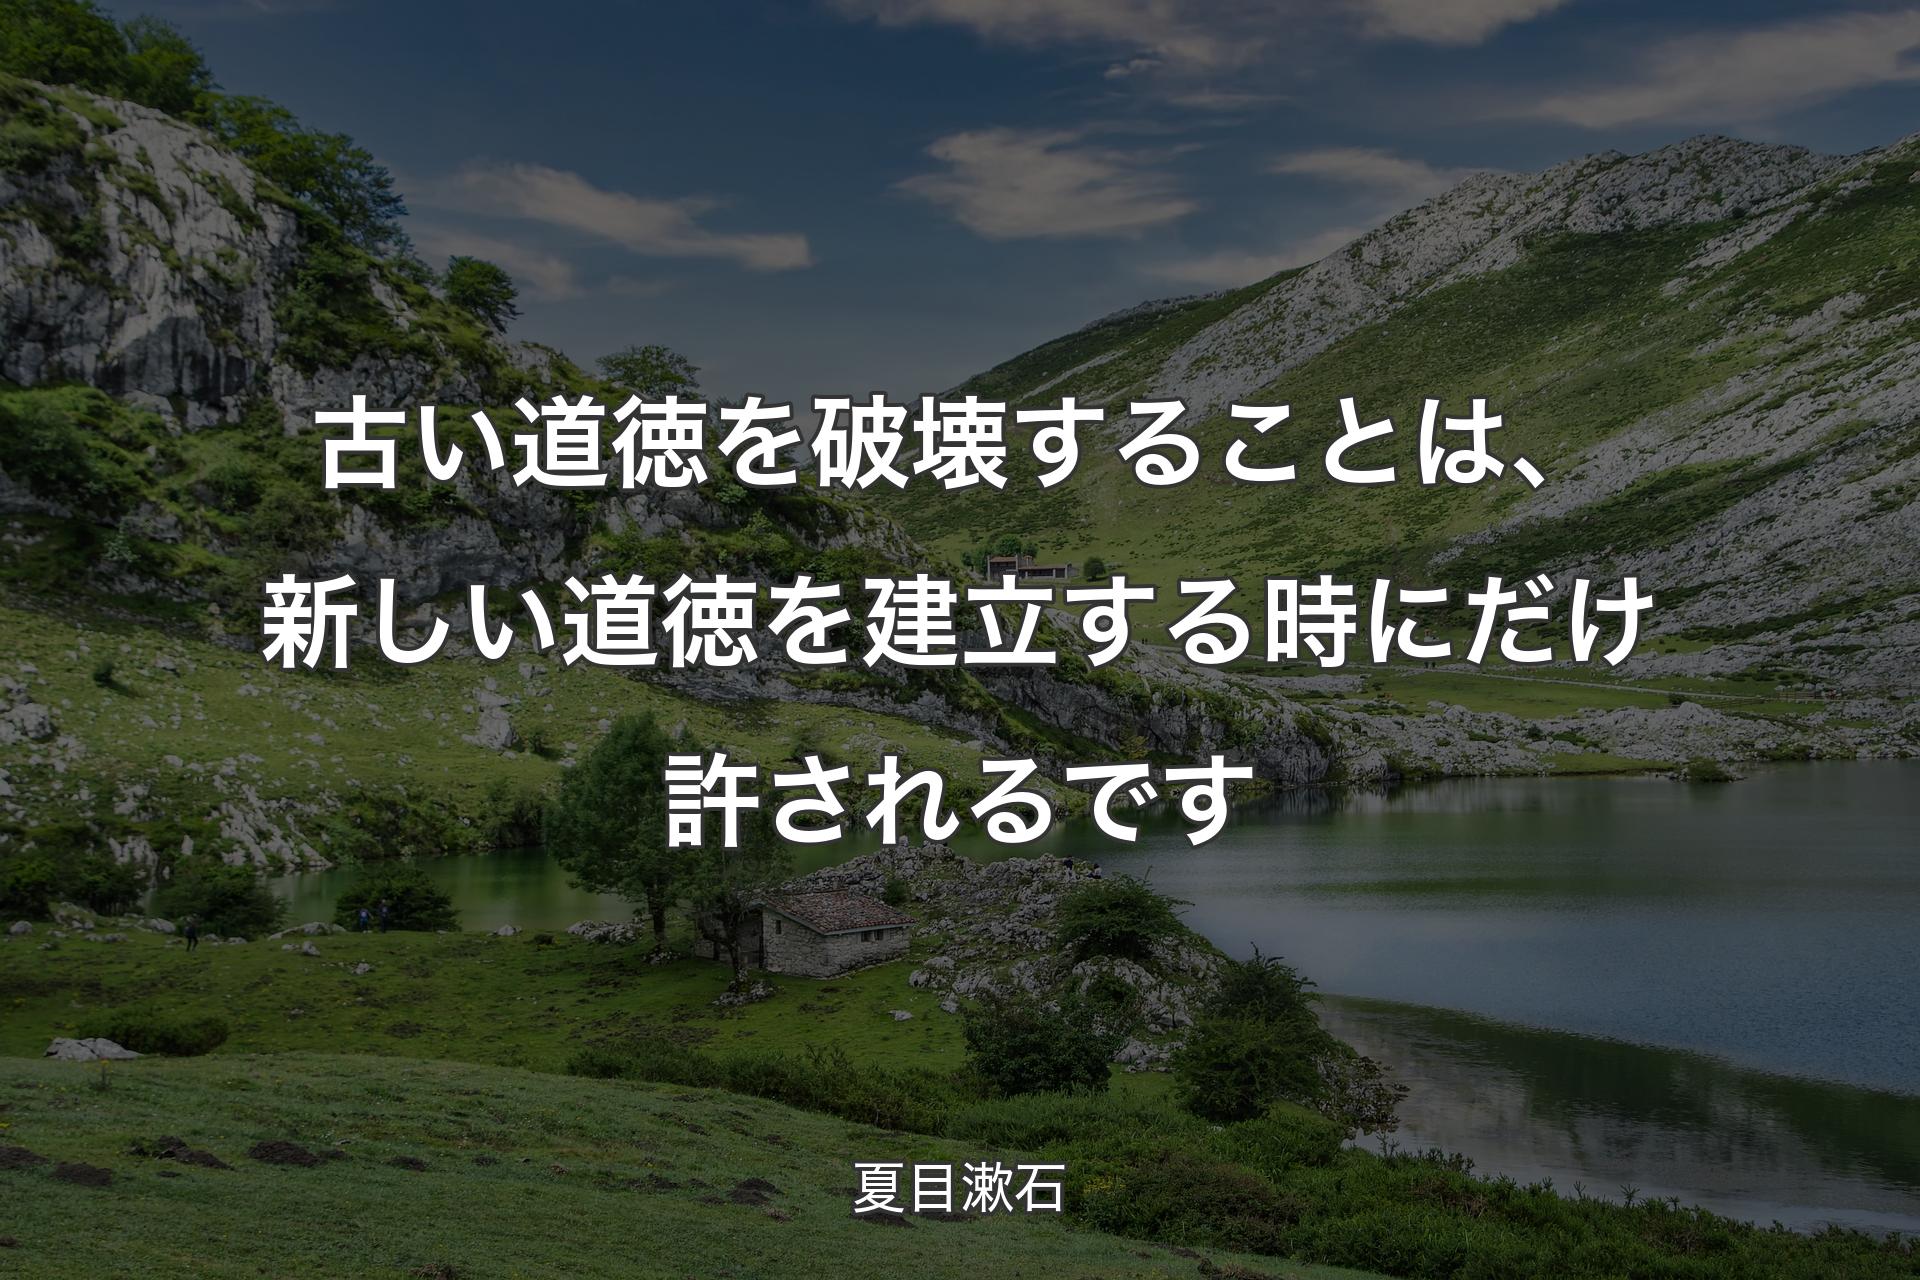 【背景1】古い道徳を破壊することは、新しい道徳を建立する時にだけ許されるです - 夏目漱石